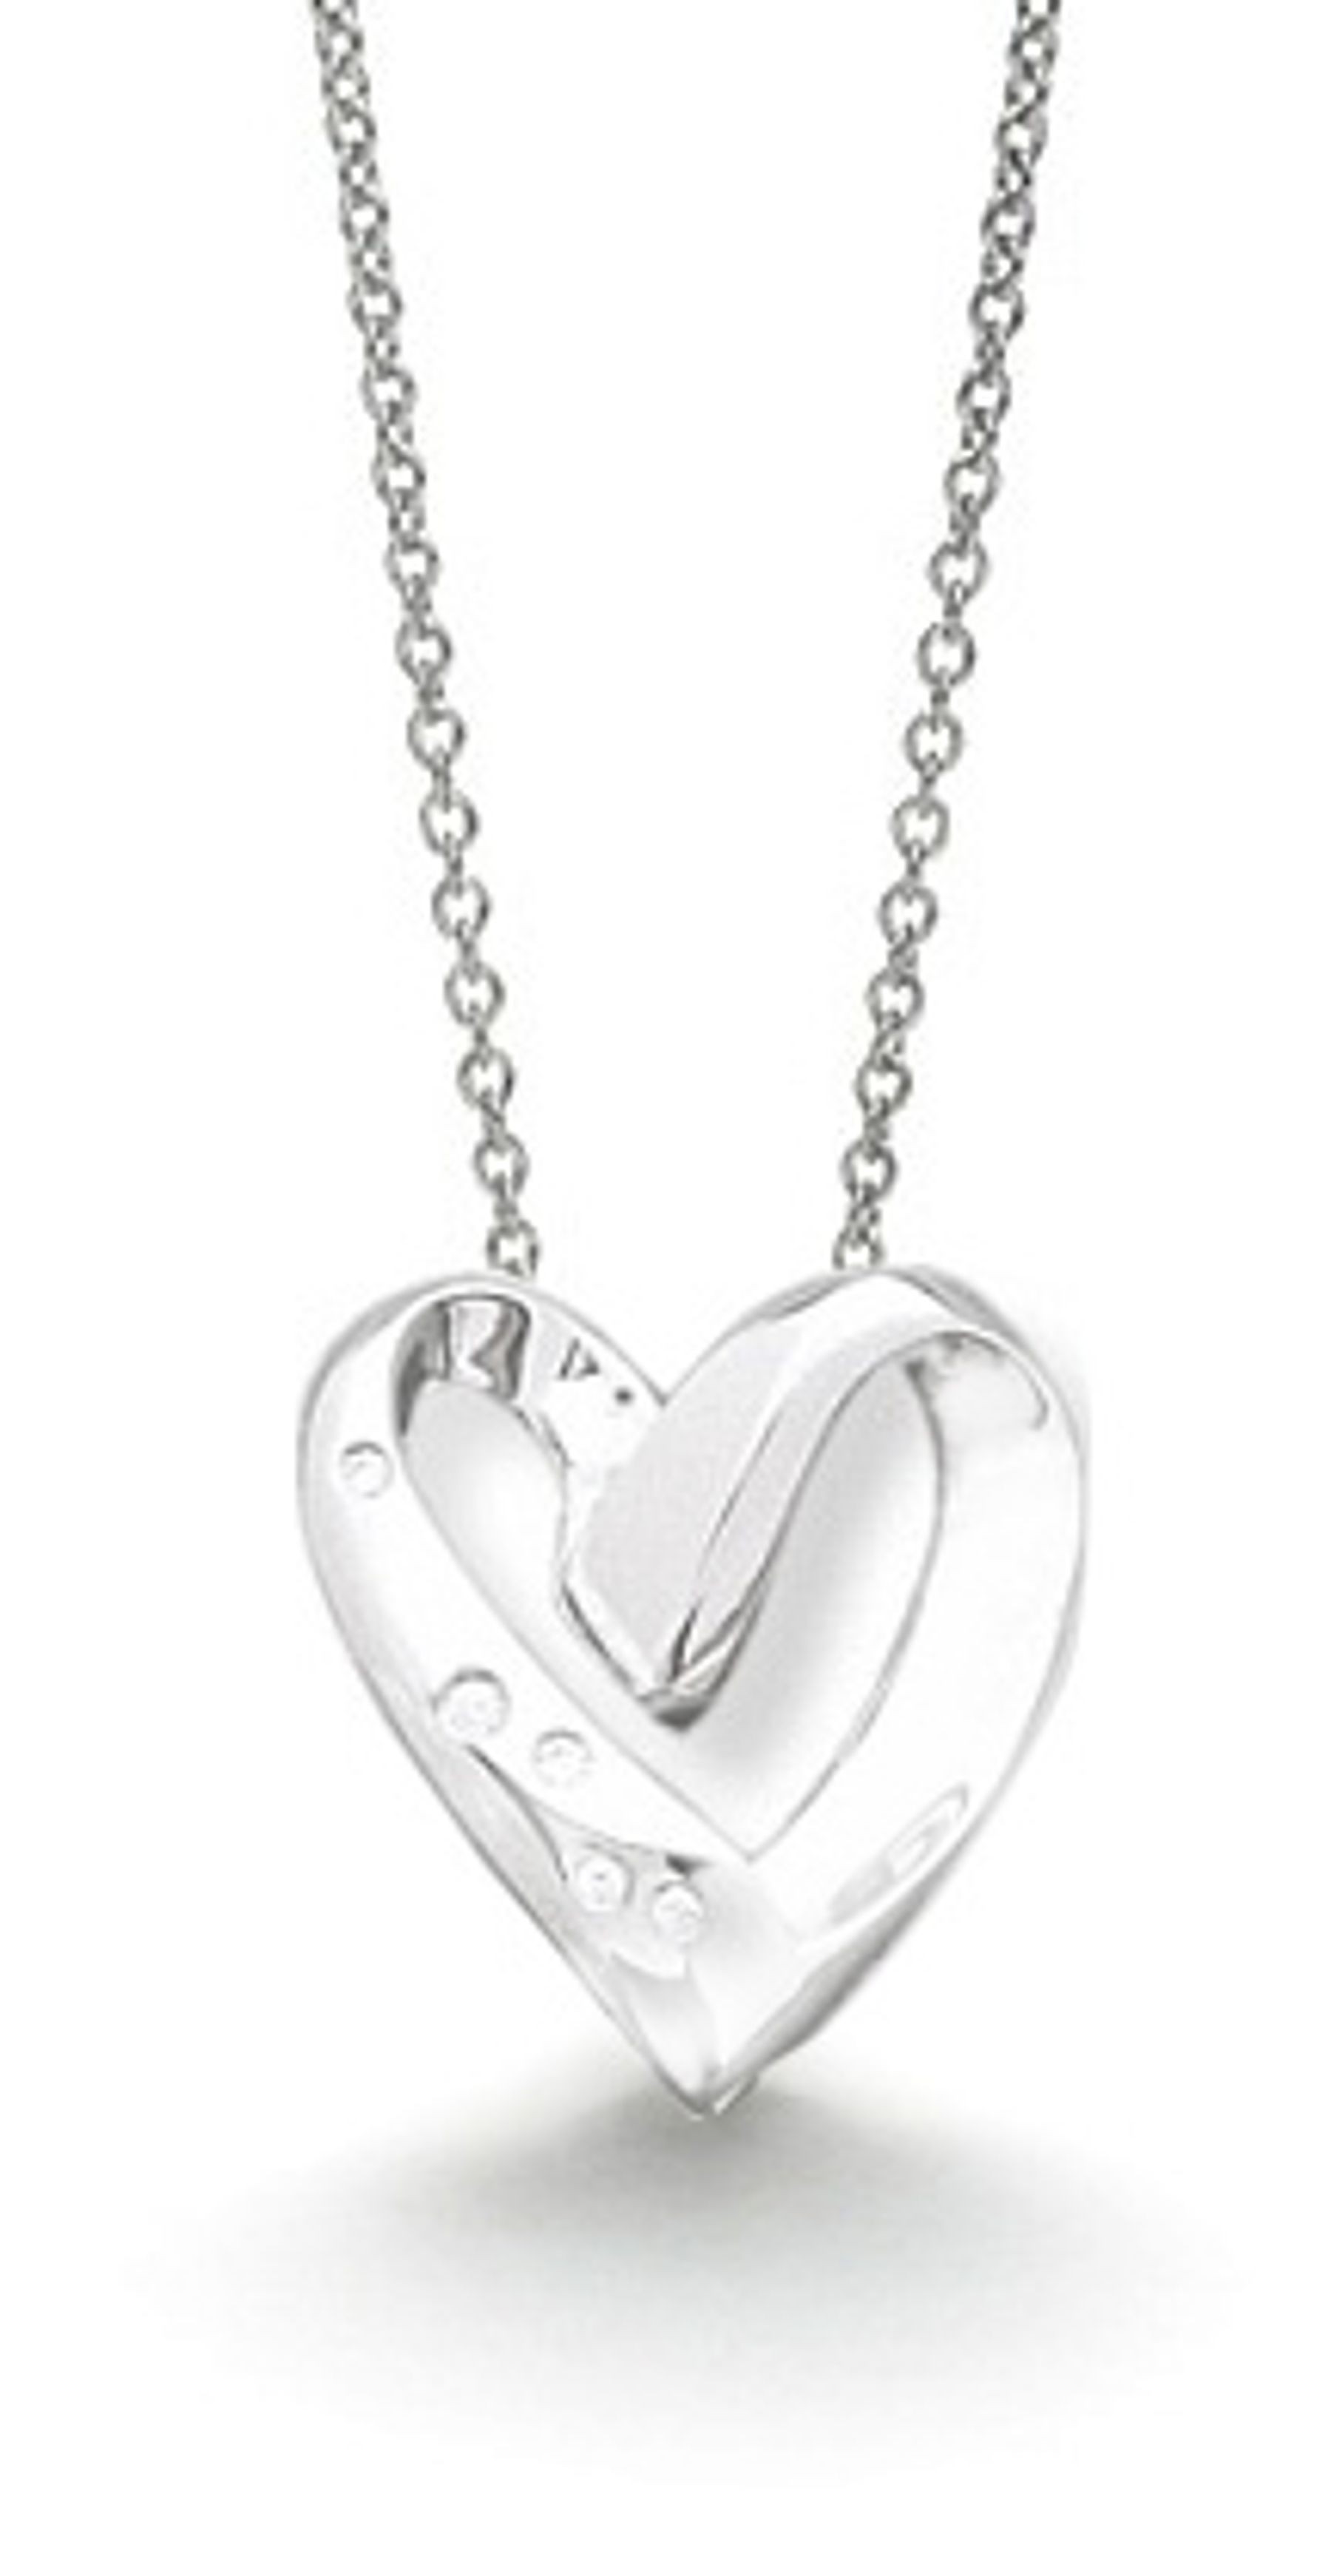 Platinum burnish set heart pendant and platinum chain